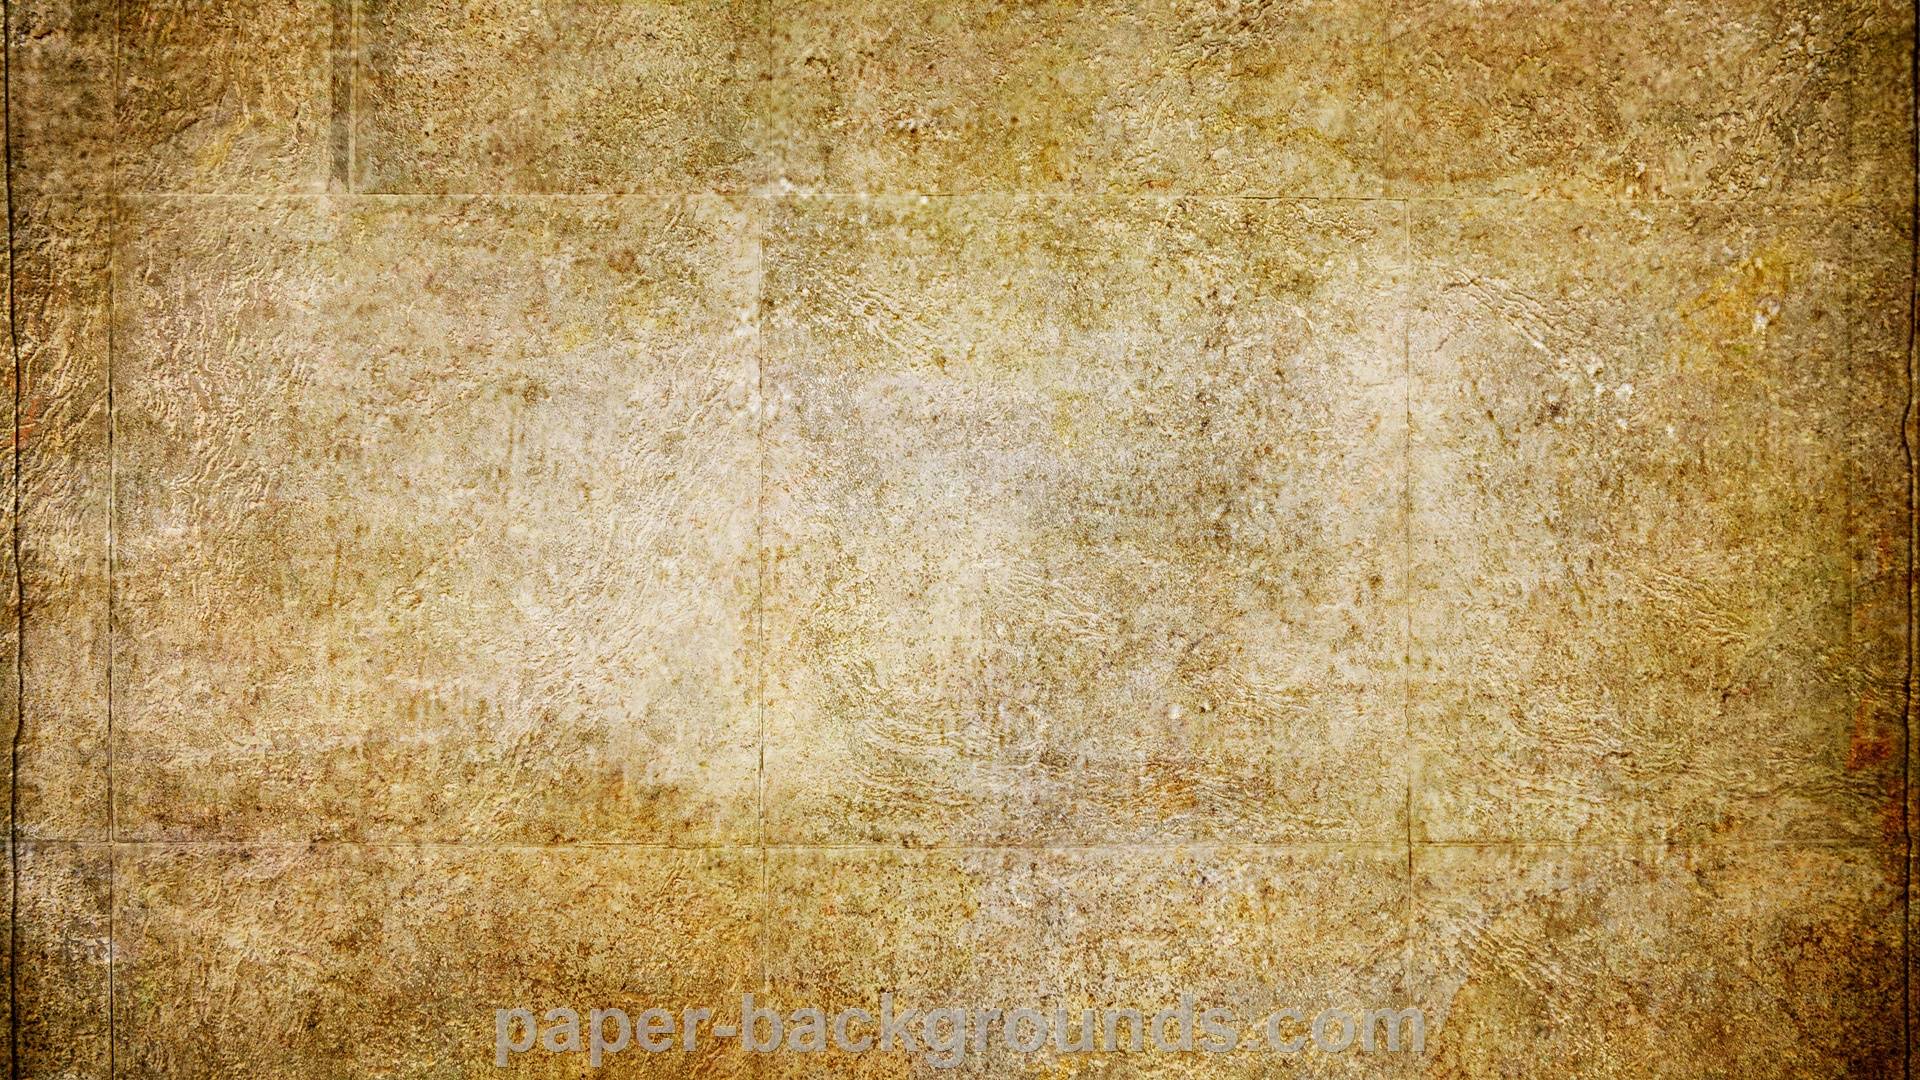 Hd Wallpapers Textures Wallpaper Cave HD Wallpapers Download Free Images Wallpaper [wallpaper981.blogspot.com]